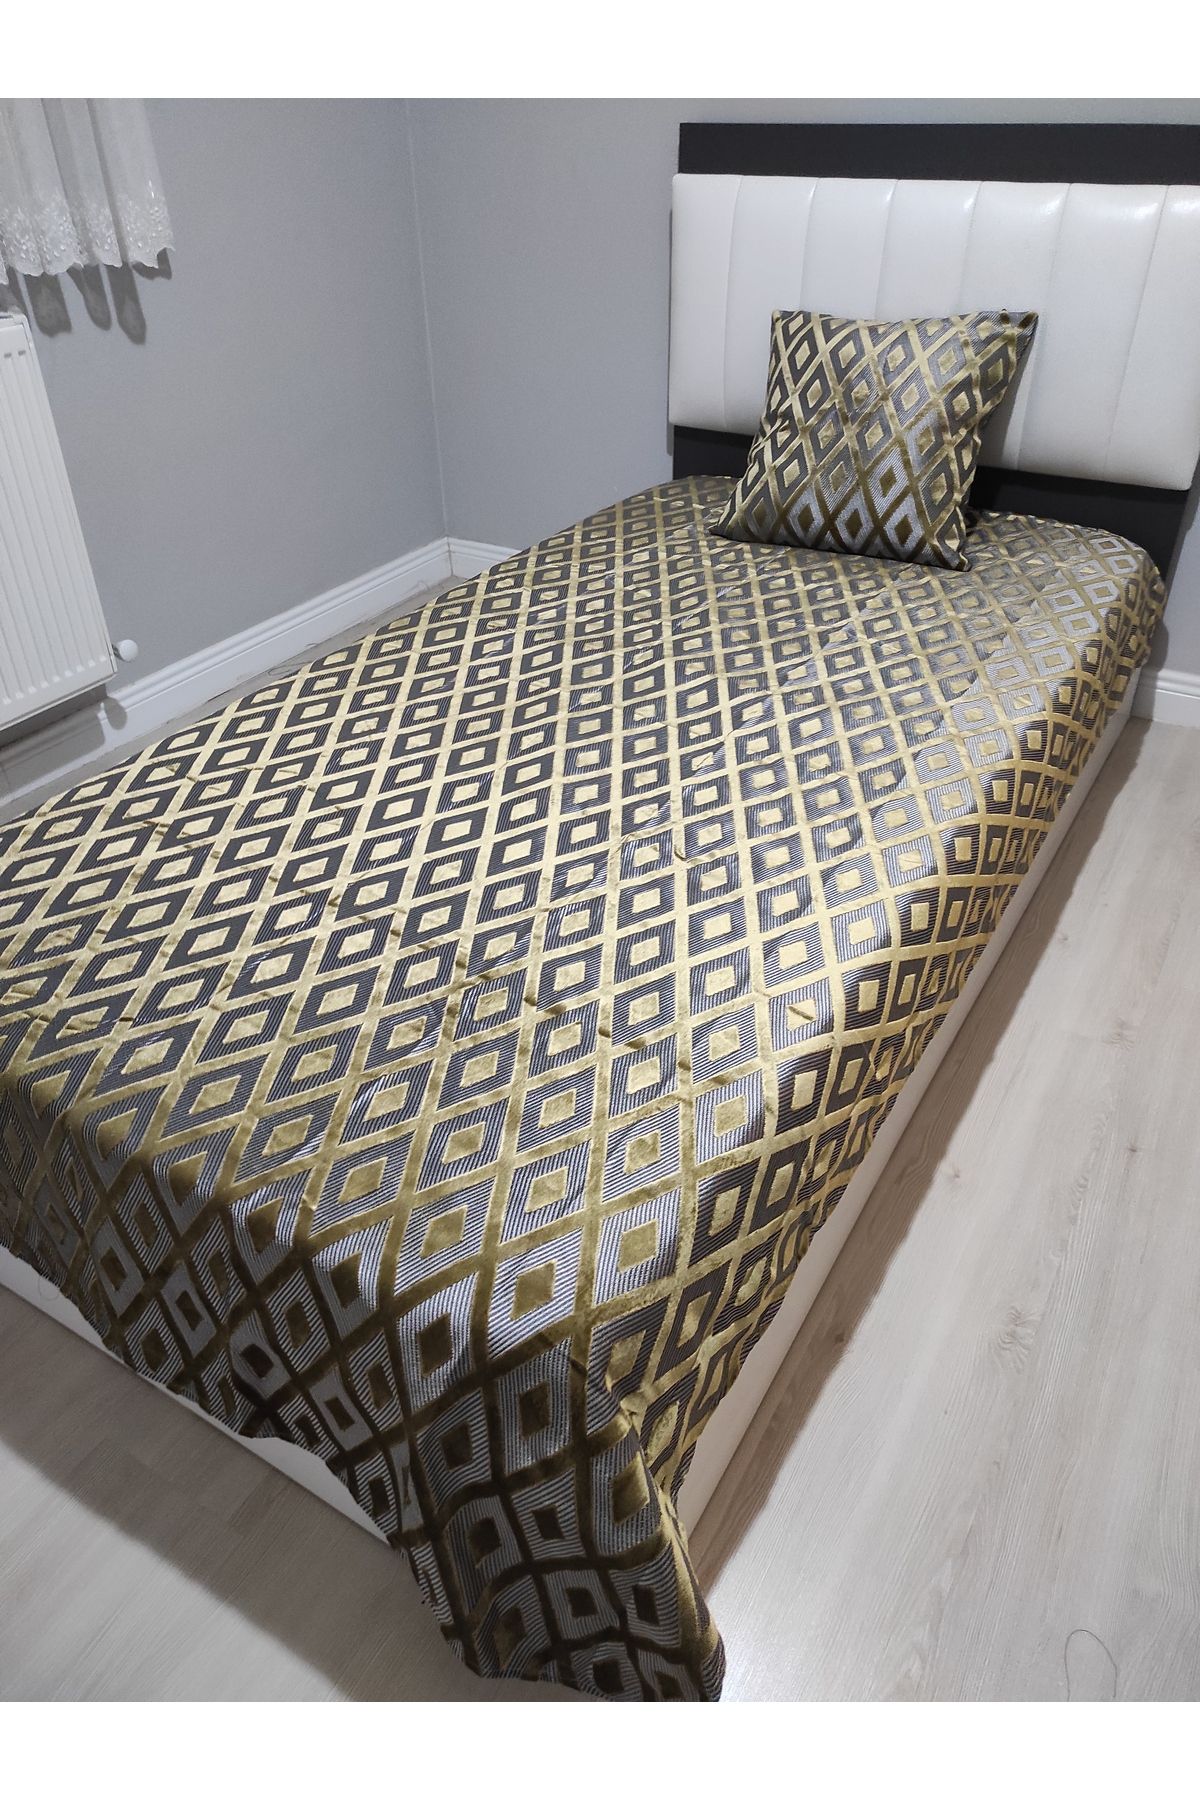 Evcimenhome Kalın Kadife Tek kişilik Yatak örtüsü seti 135cmX230cm renk: altın sarısı-gümüş gri